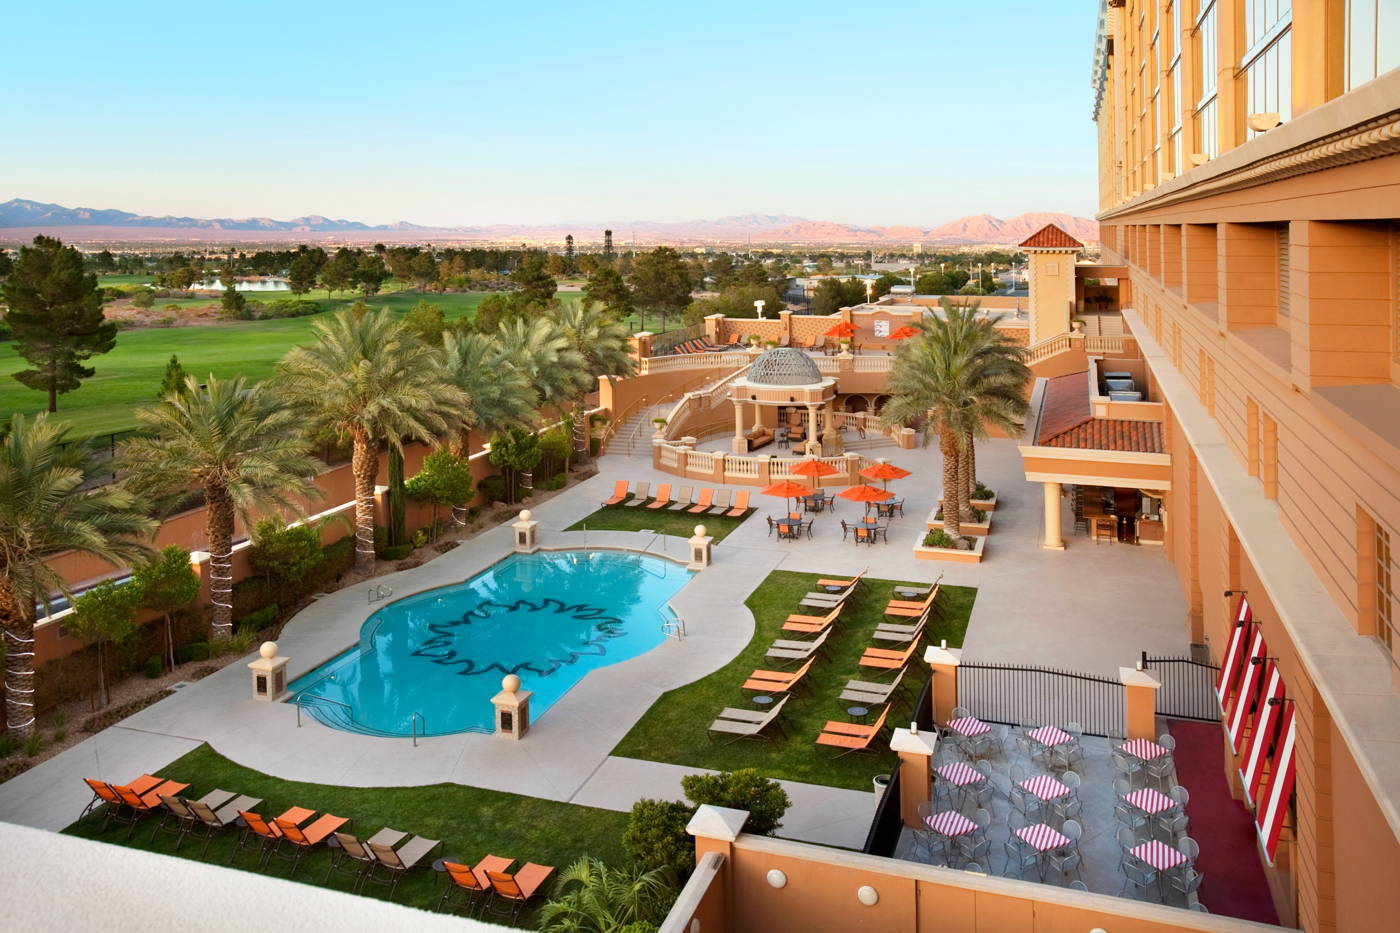 Resort Pool at Suncoast Las Vegas